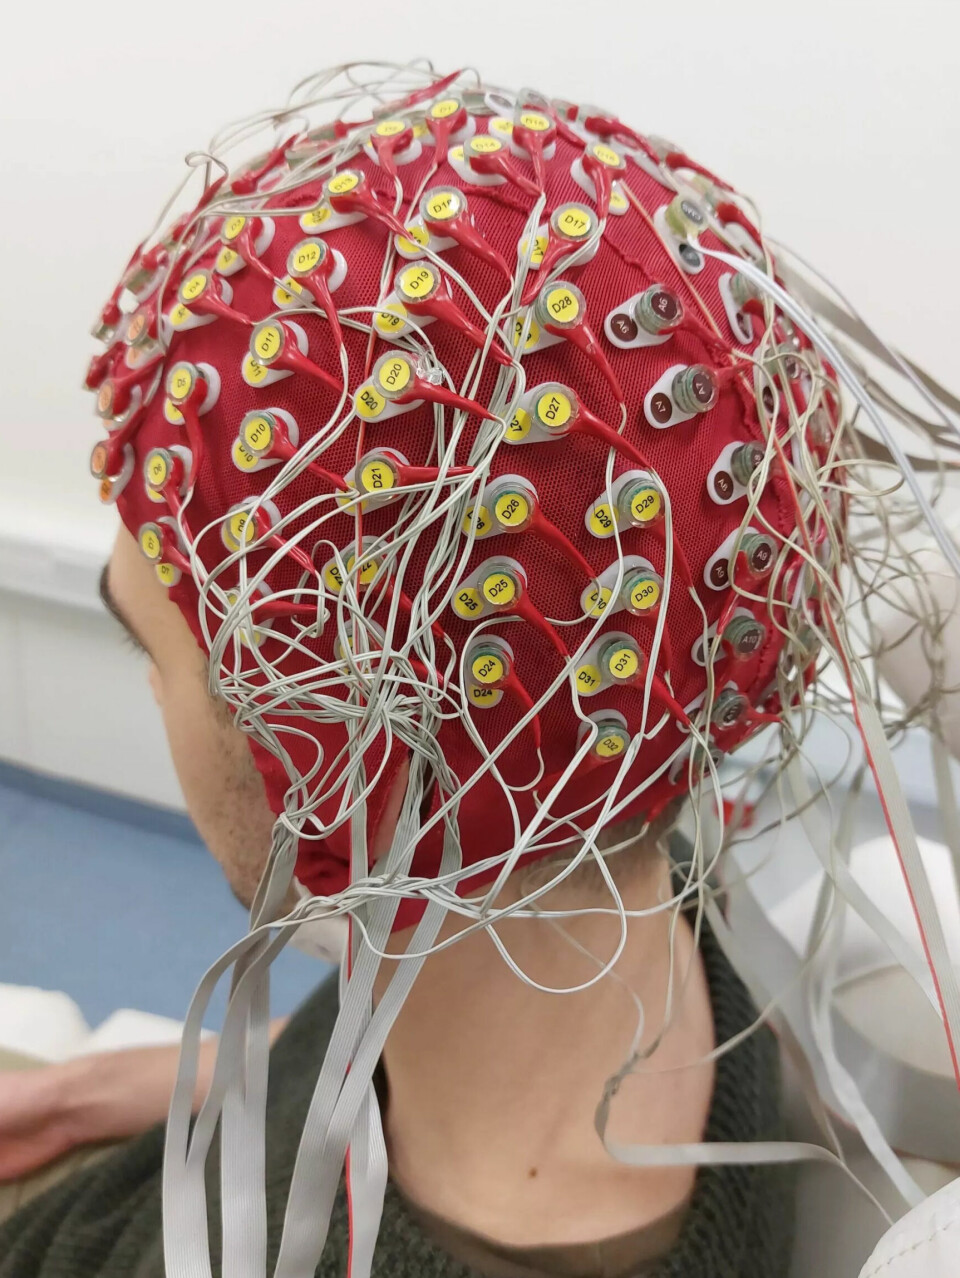 Ved en EEG-måling blir elektrodene satt fast i hullene på en såkalt EEG-hette slik at man er sikker på at dataen blir samlet fra identiske posisjoner på kraniet. Det er smart når man måler flere forsøksdeltakere i vitenskapelige forsøk.